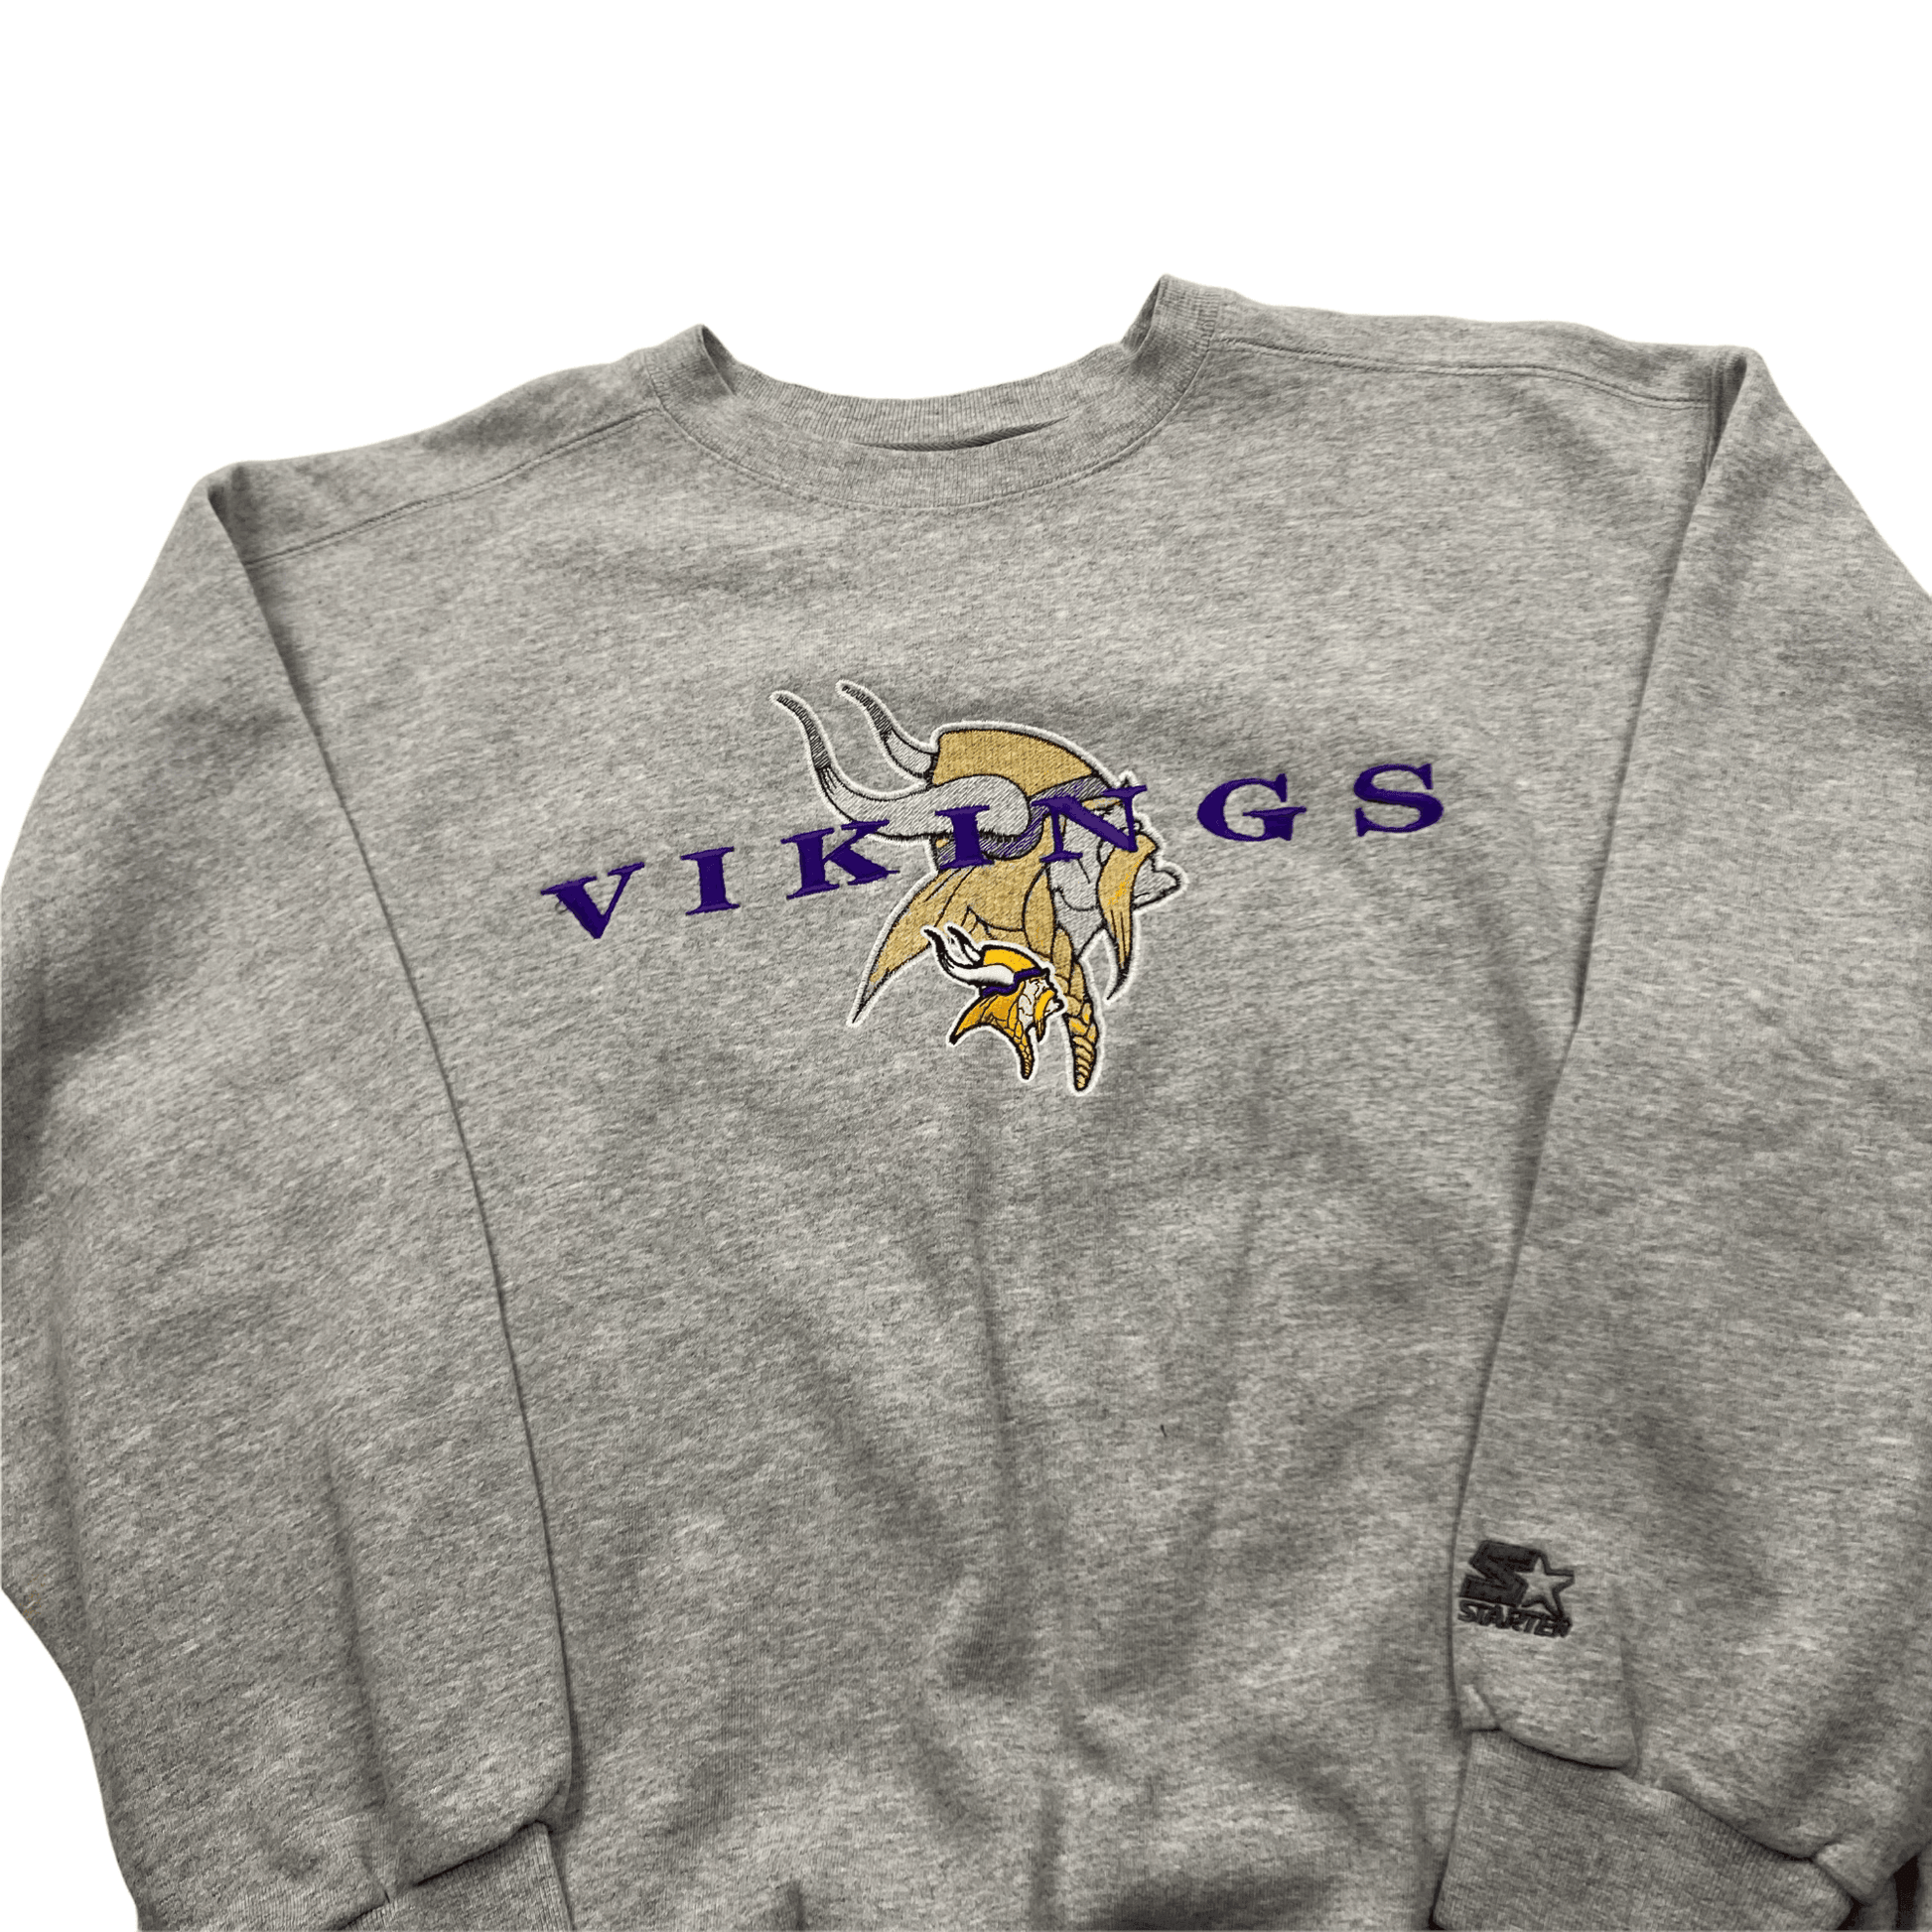 Vintage Grey Starter NFL Vikings Spell-Out Sweatshirt - Medium - The Streetwear Studio